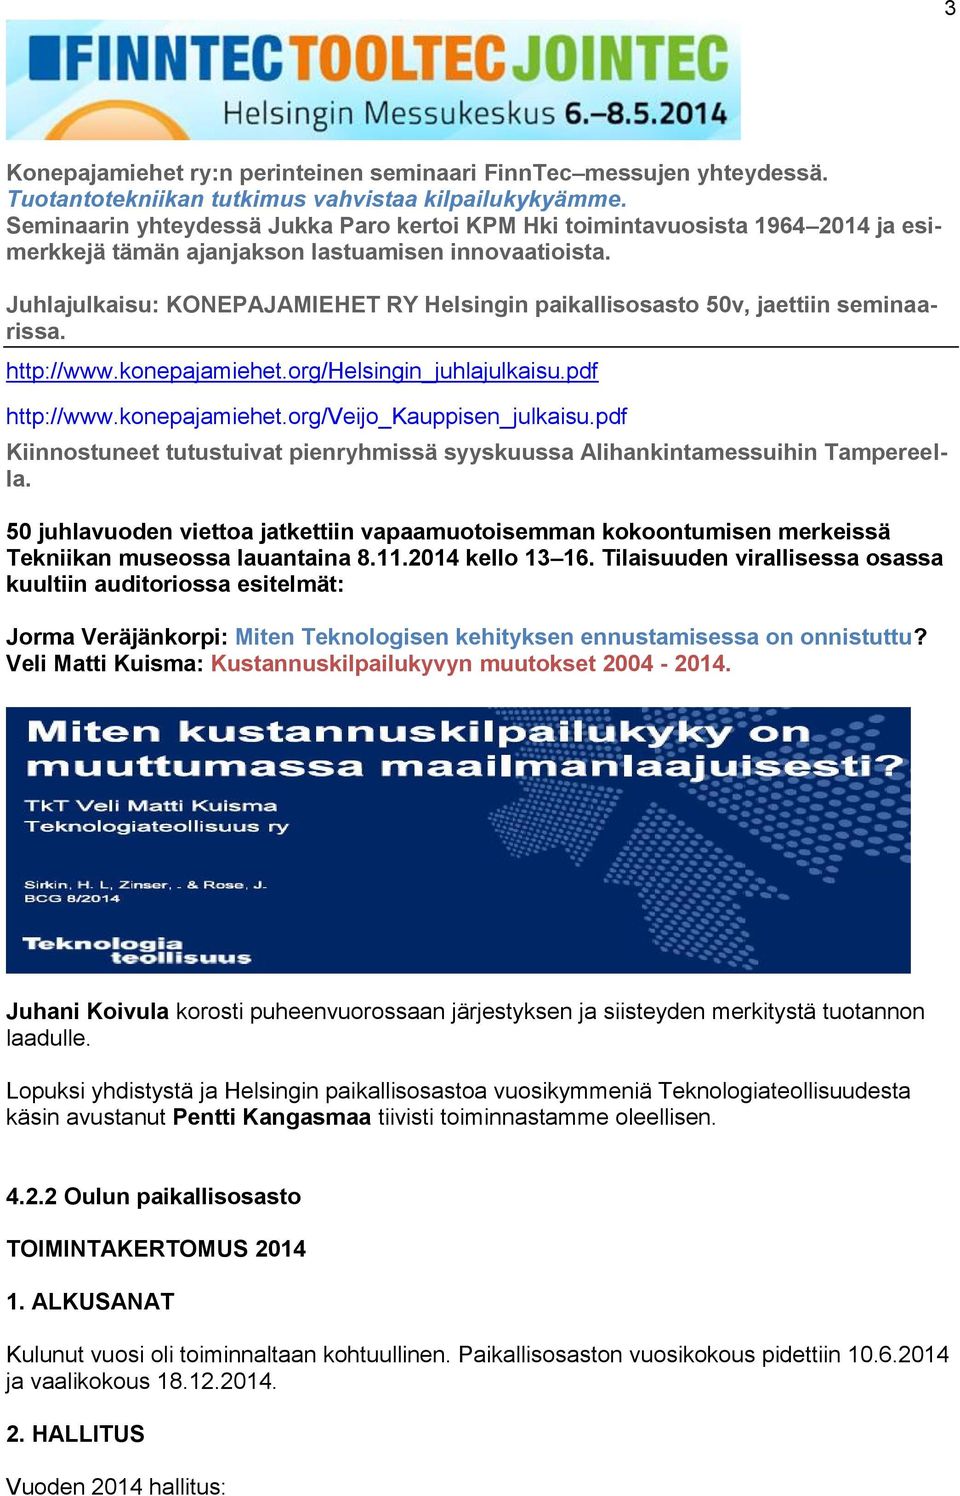 Juhlajulkaisu: KONEPAJAMIEHET RY Helsingin paikallisosasto 50v, jaettiin seminaarissa. http://www.konepajamiehet.org/helsingin_juhlajulkaisu.pdf http://www.konepajamiehet.org/veijo_kauppisen_julkaisu.